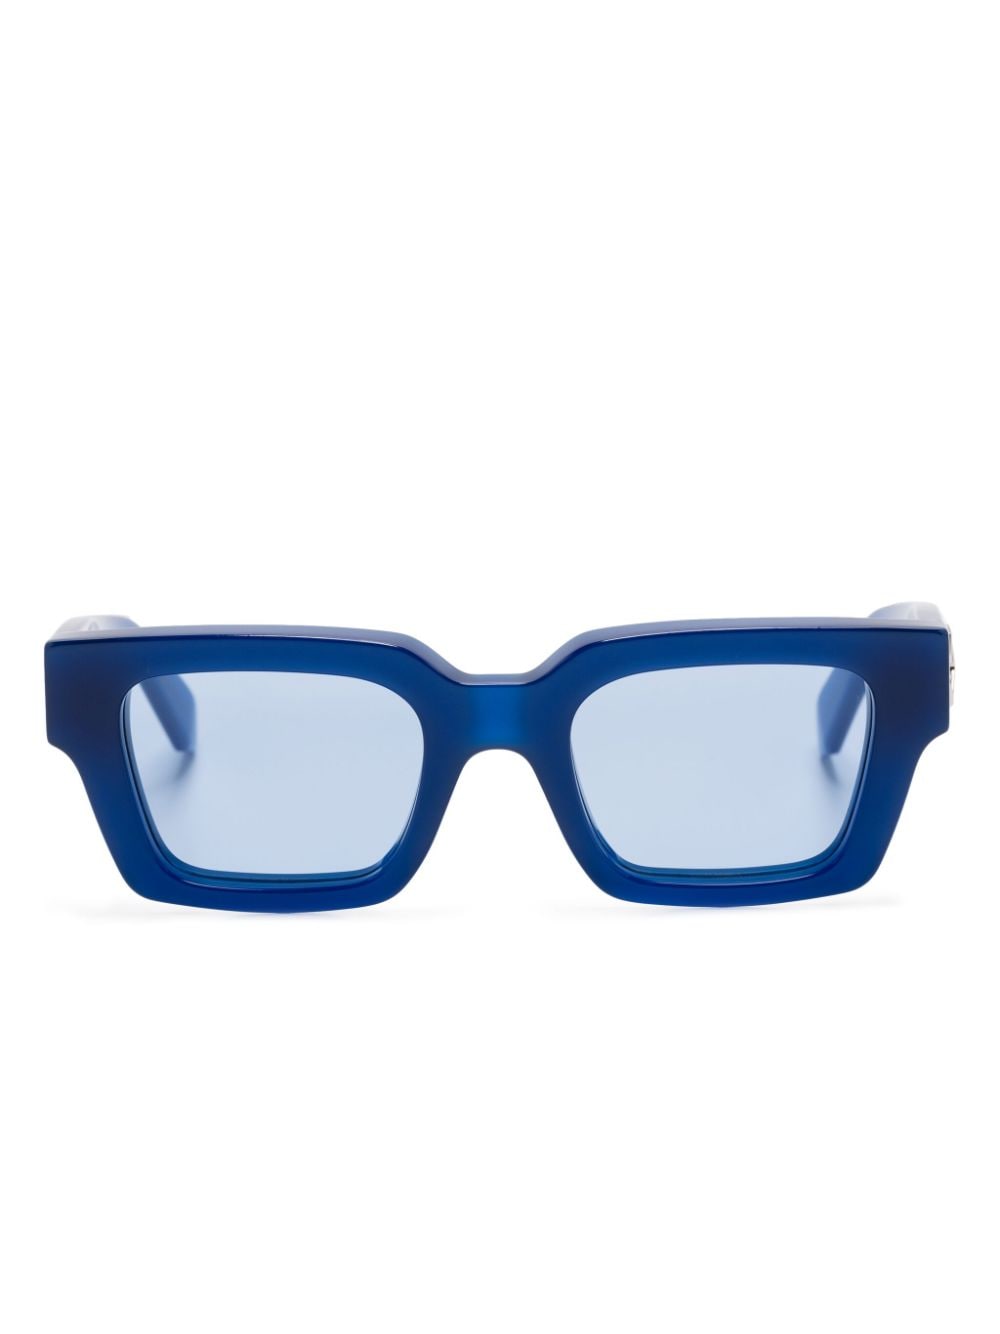 Square frame glasses